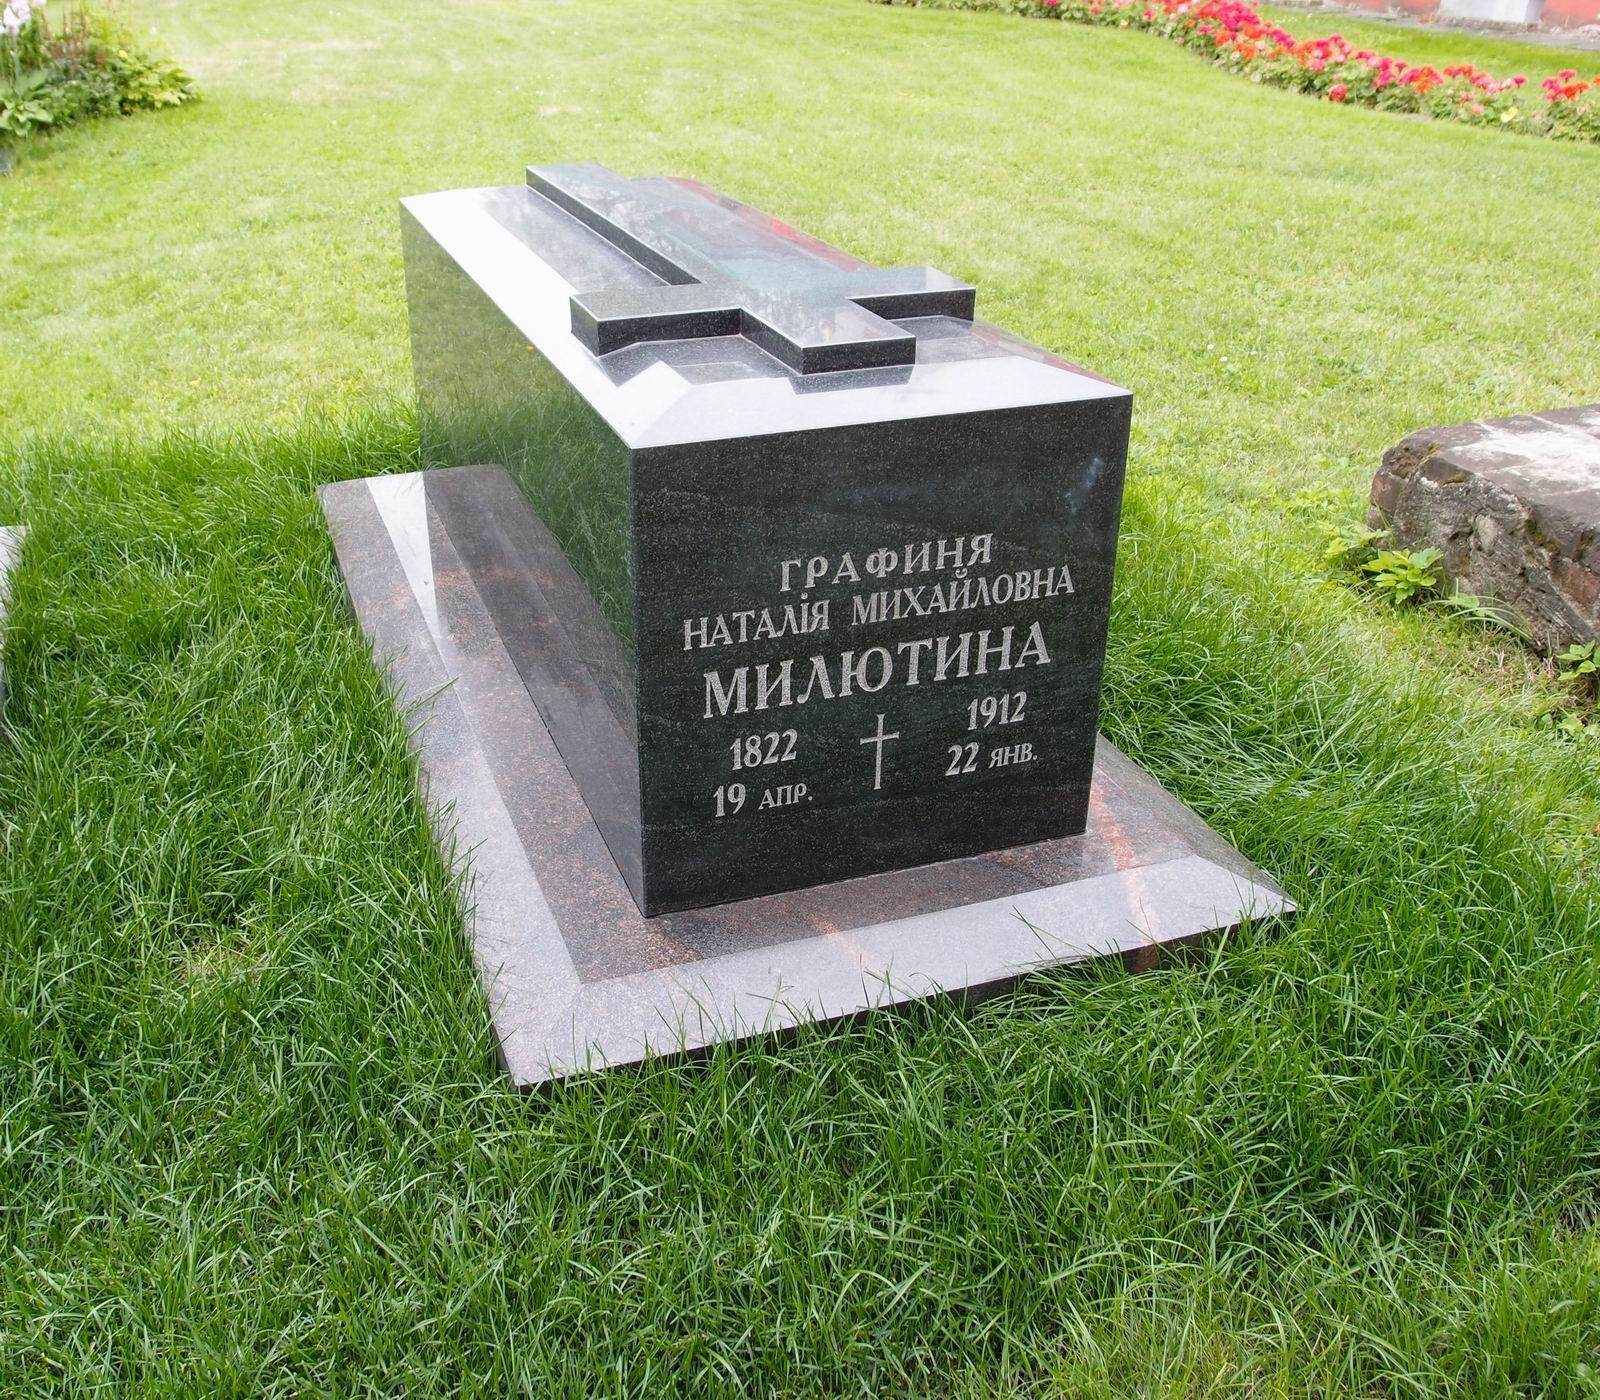 Памятник на могиле Милютиной Н.М. (1822-1912), в Новодевичьем монастыре.